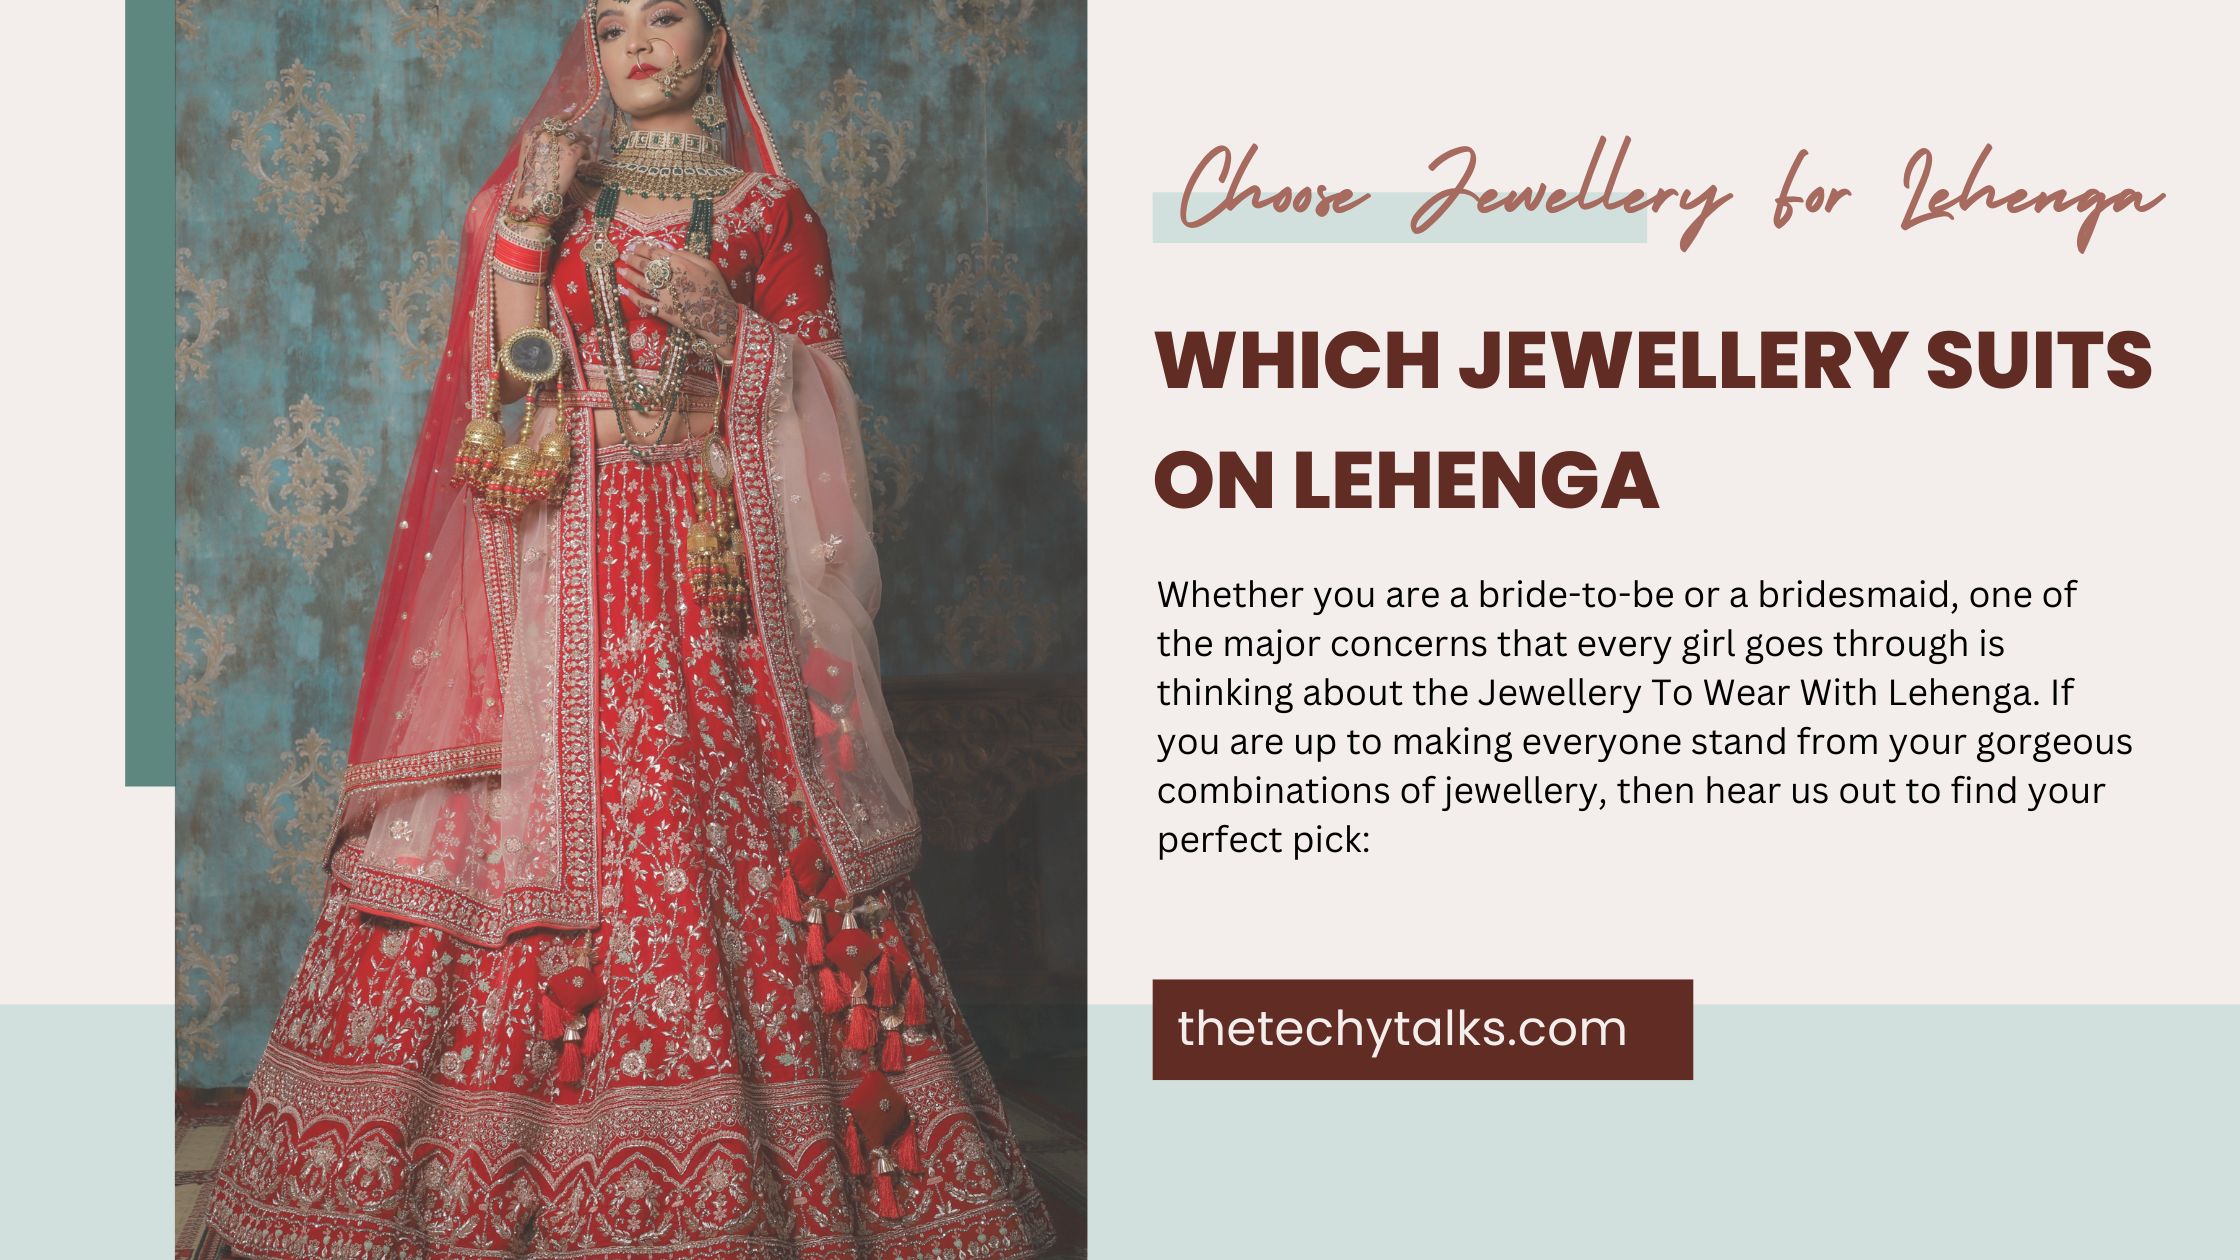 How To Choose Jewellery For Lehenga